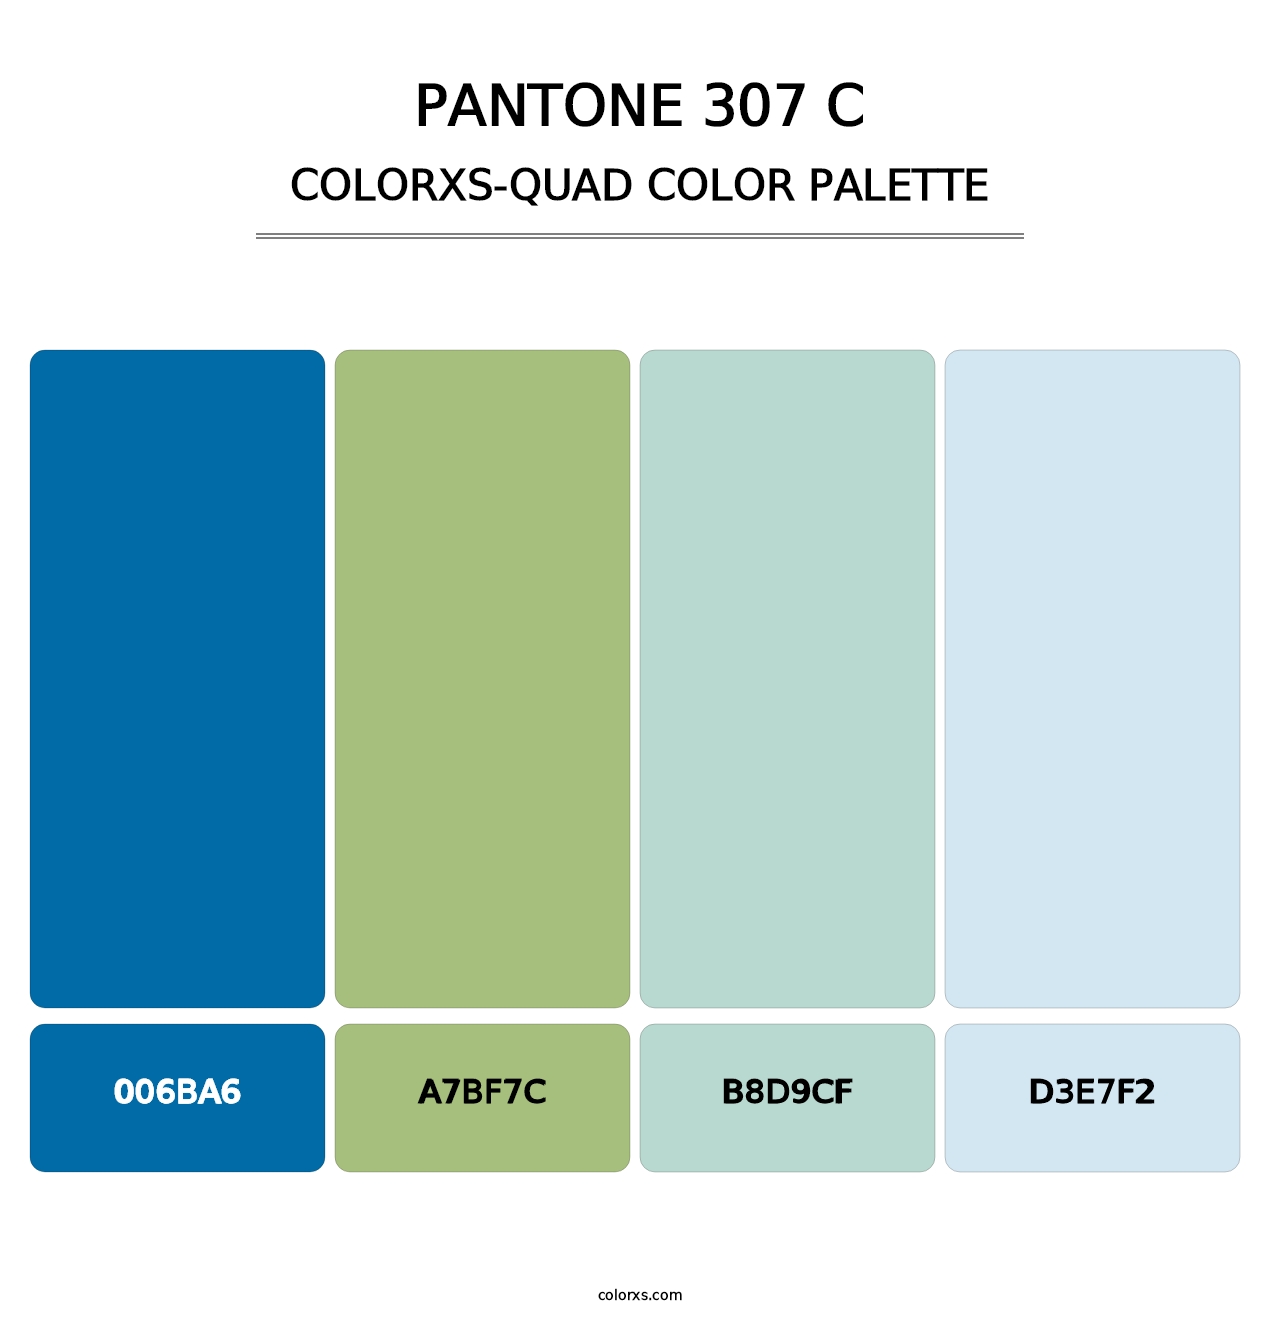 PANTONE 307 C - Colorxs Quad Palette